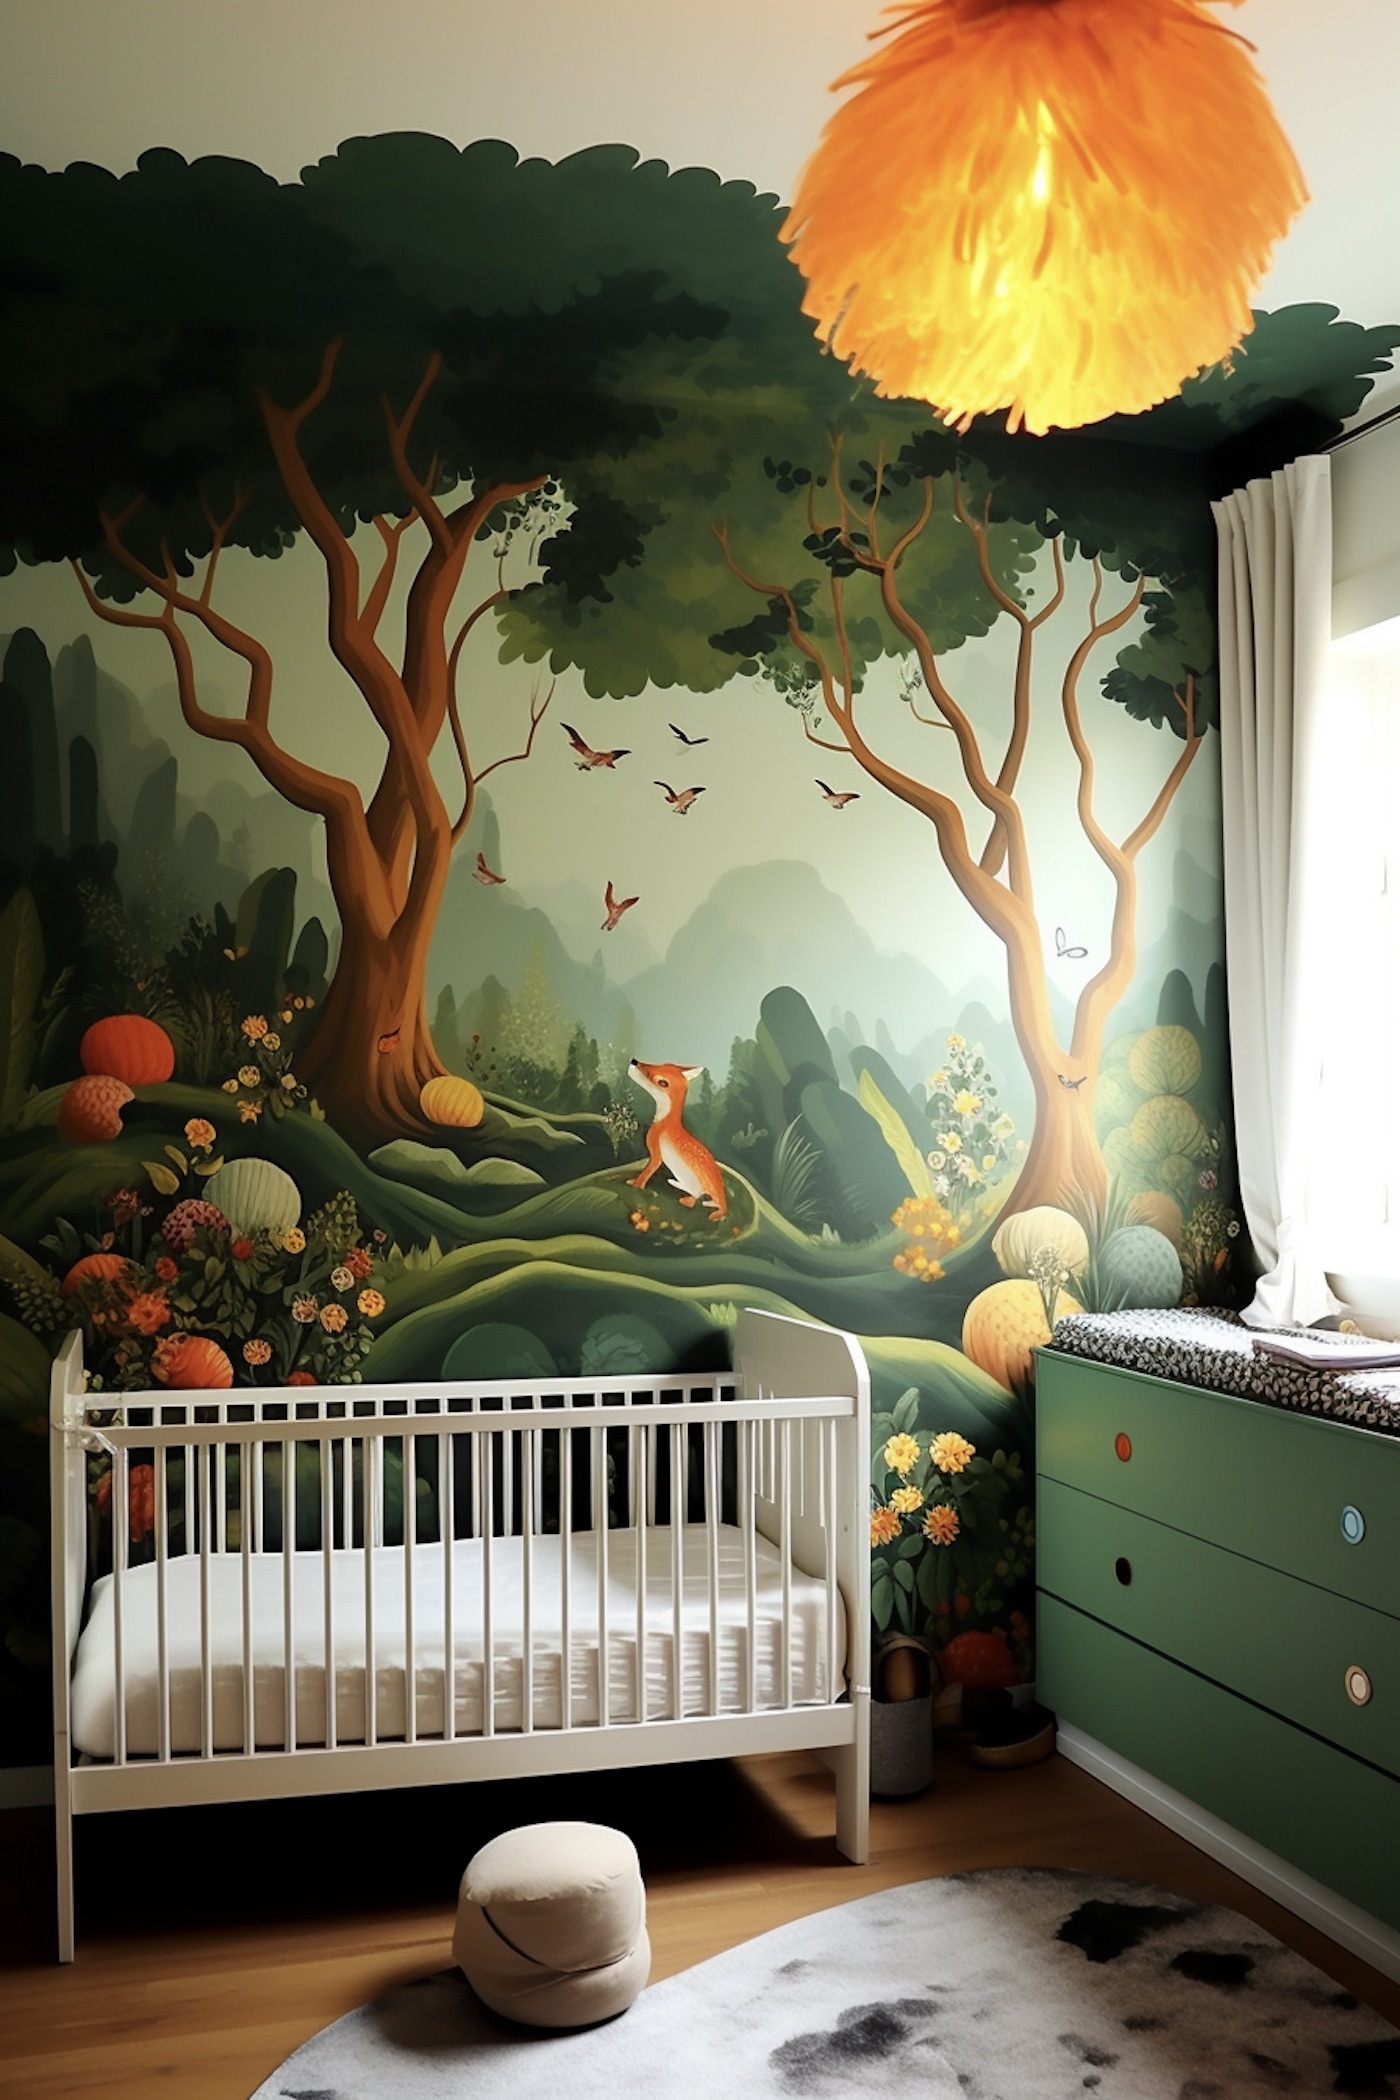 Créez la chambre de bébé parfaite avec le thème nuage !